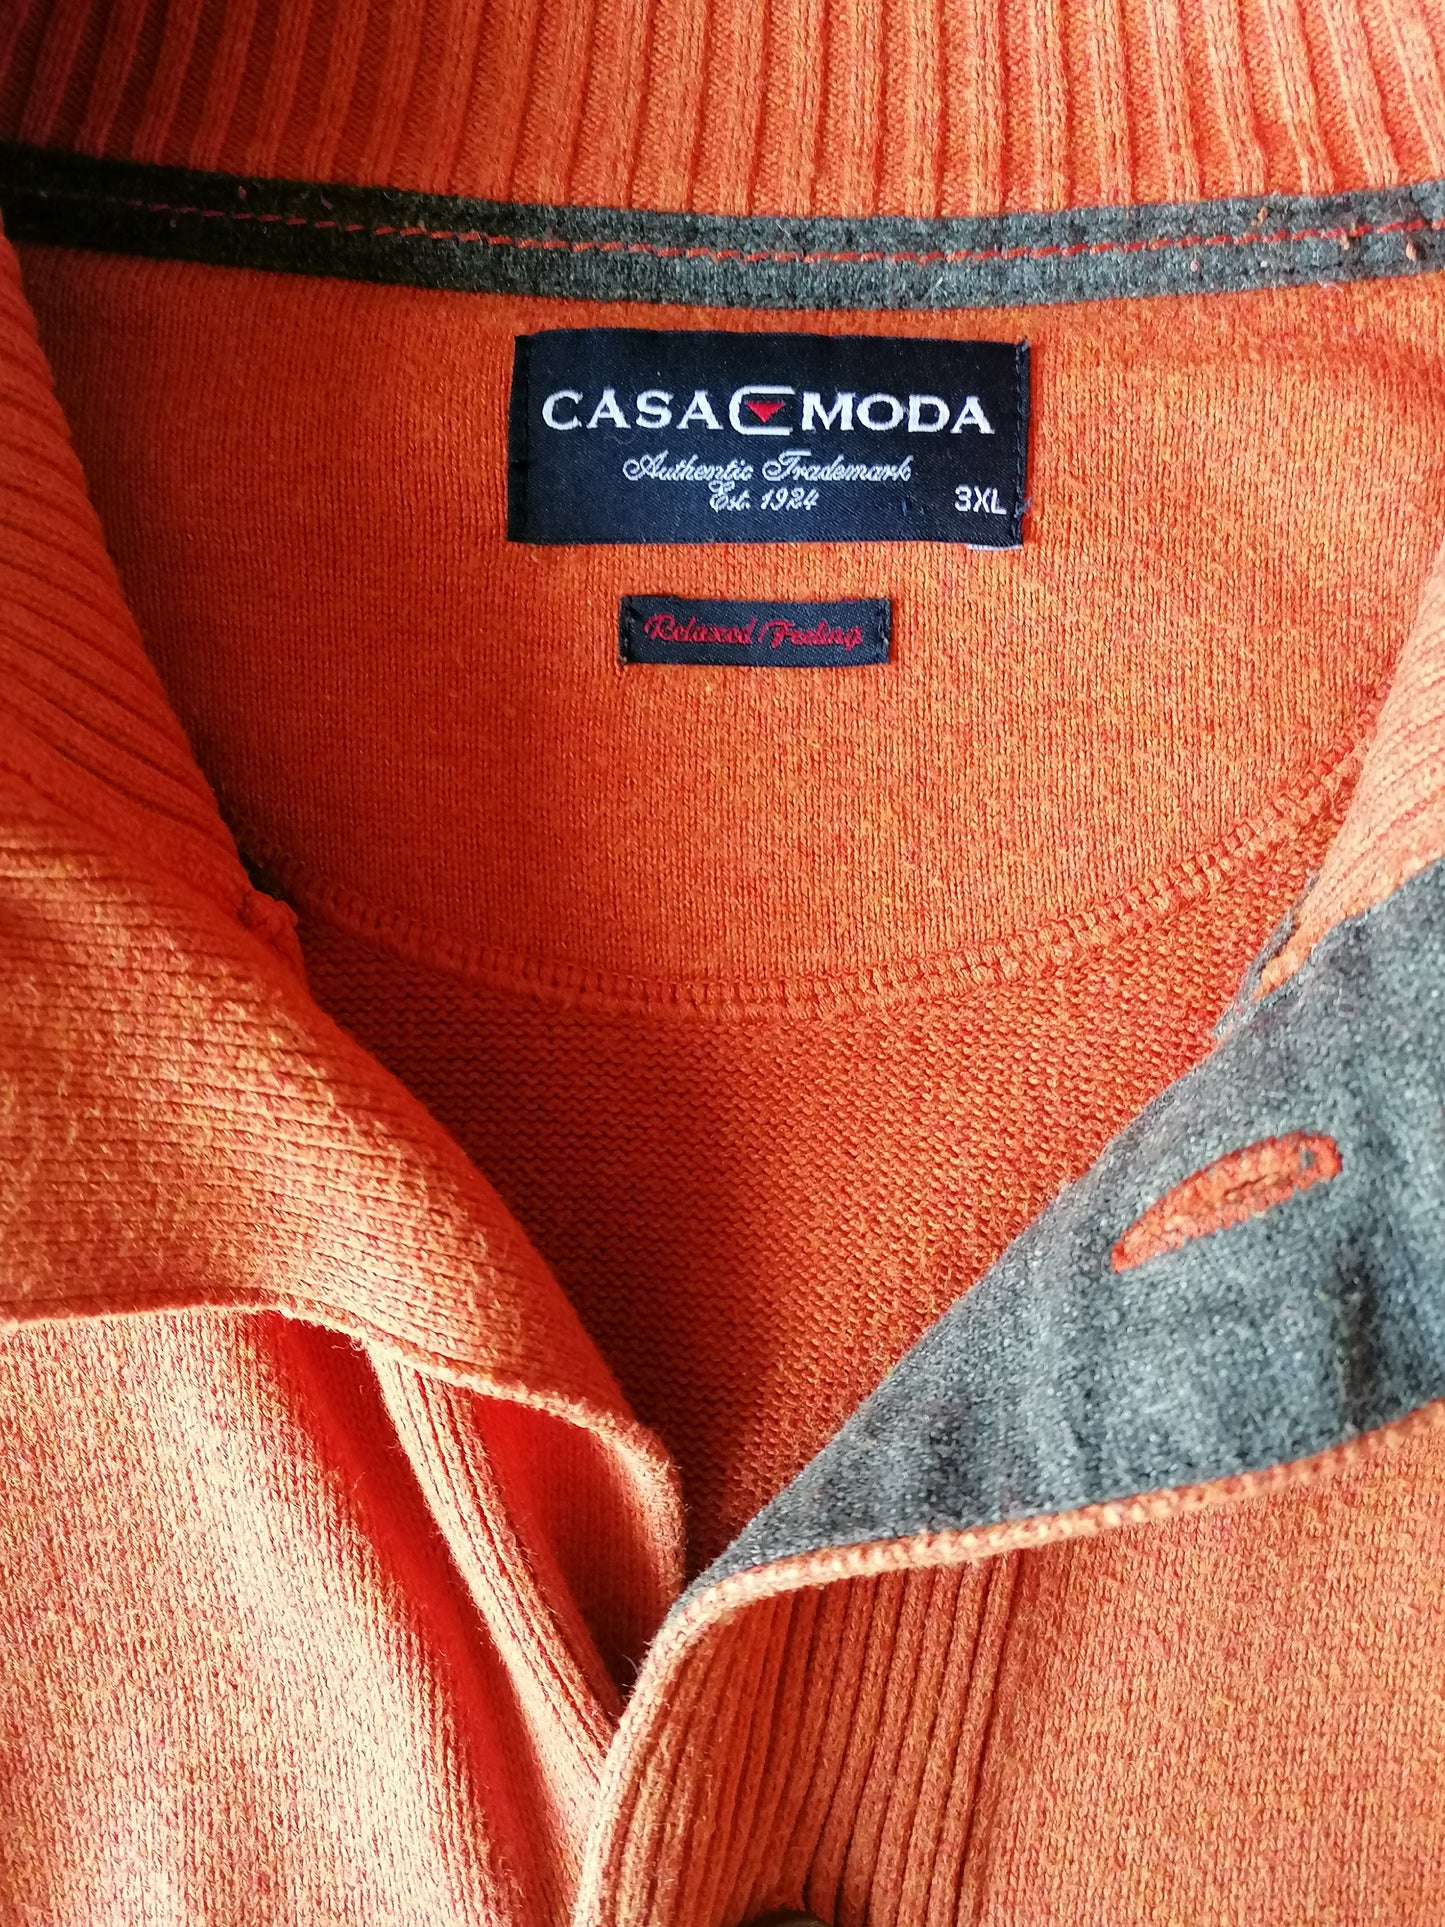 Casa Moda Cardigan mit Knöpfen. Orange gemischte Größe xxxl / 3xl.